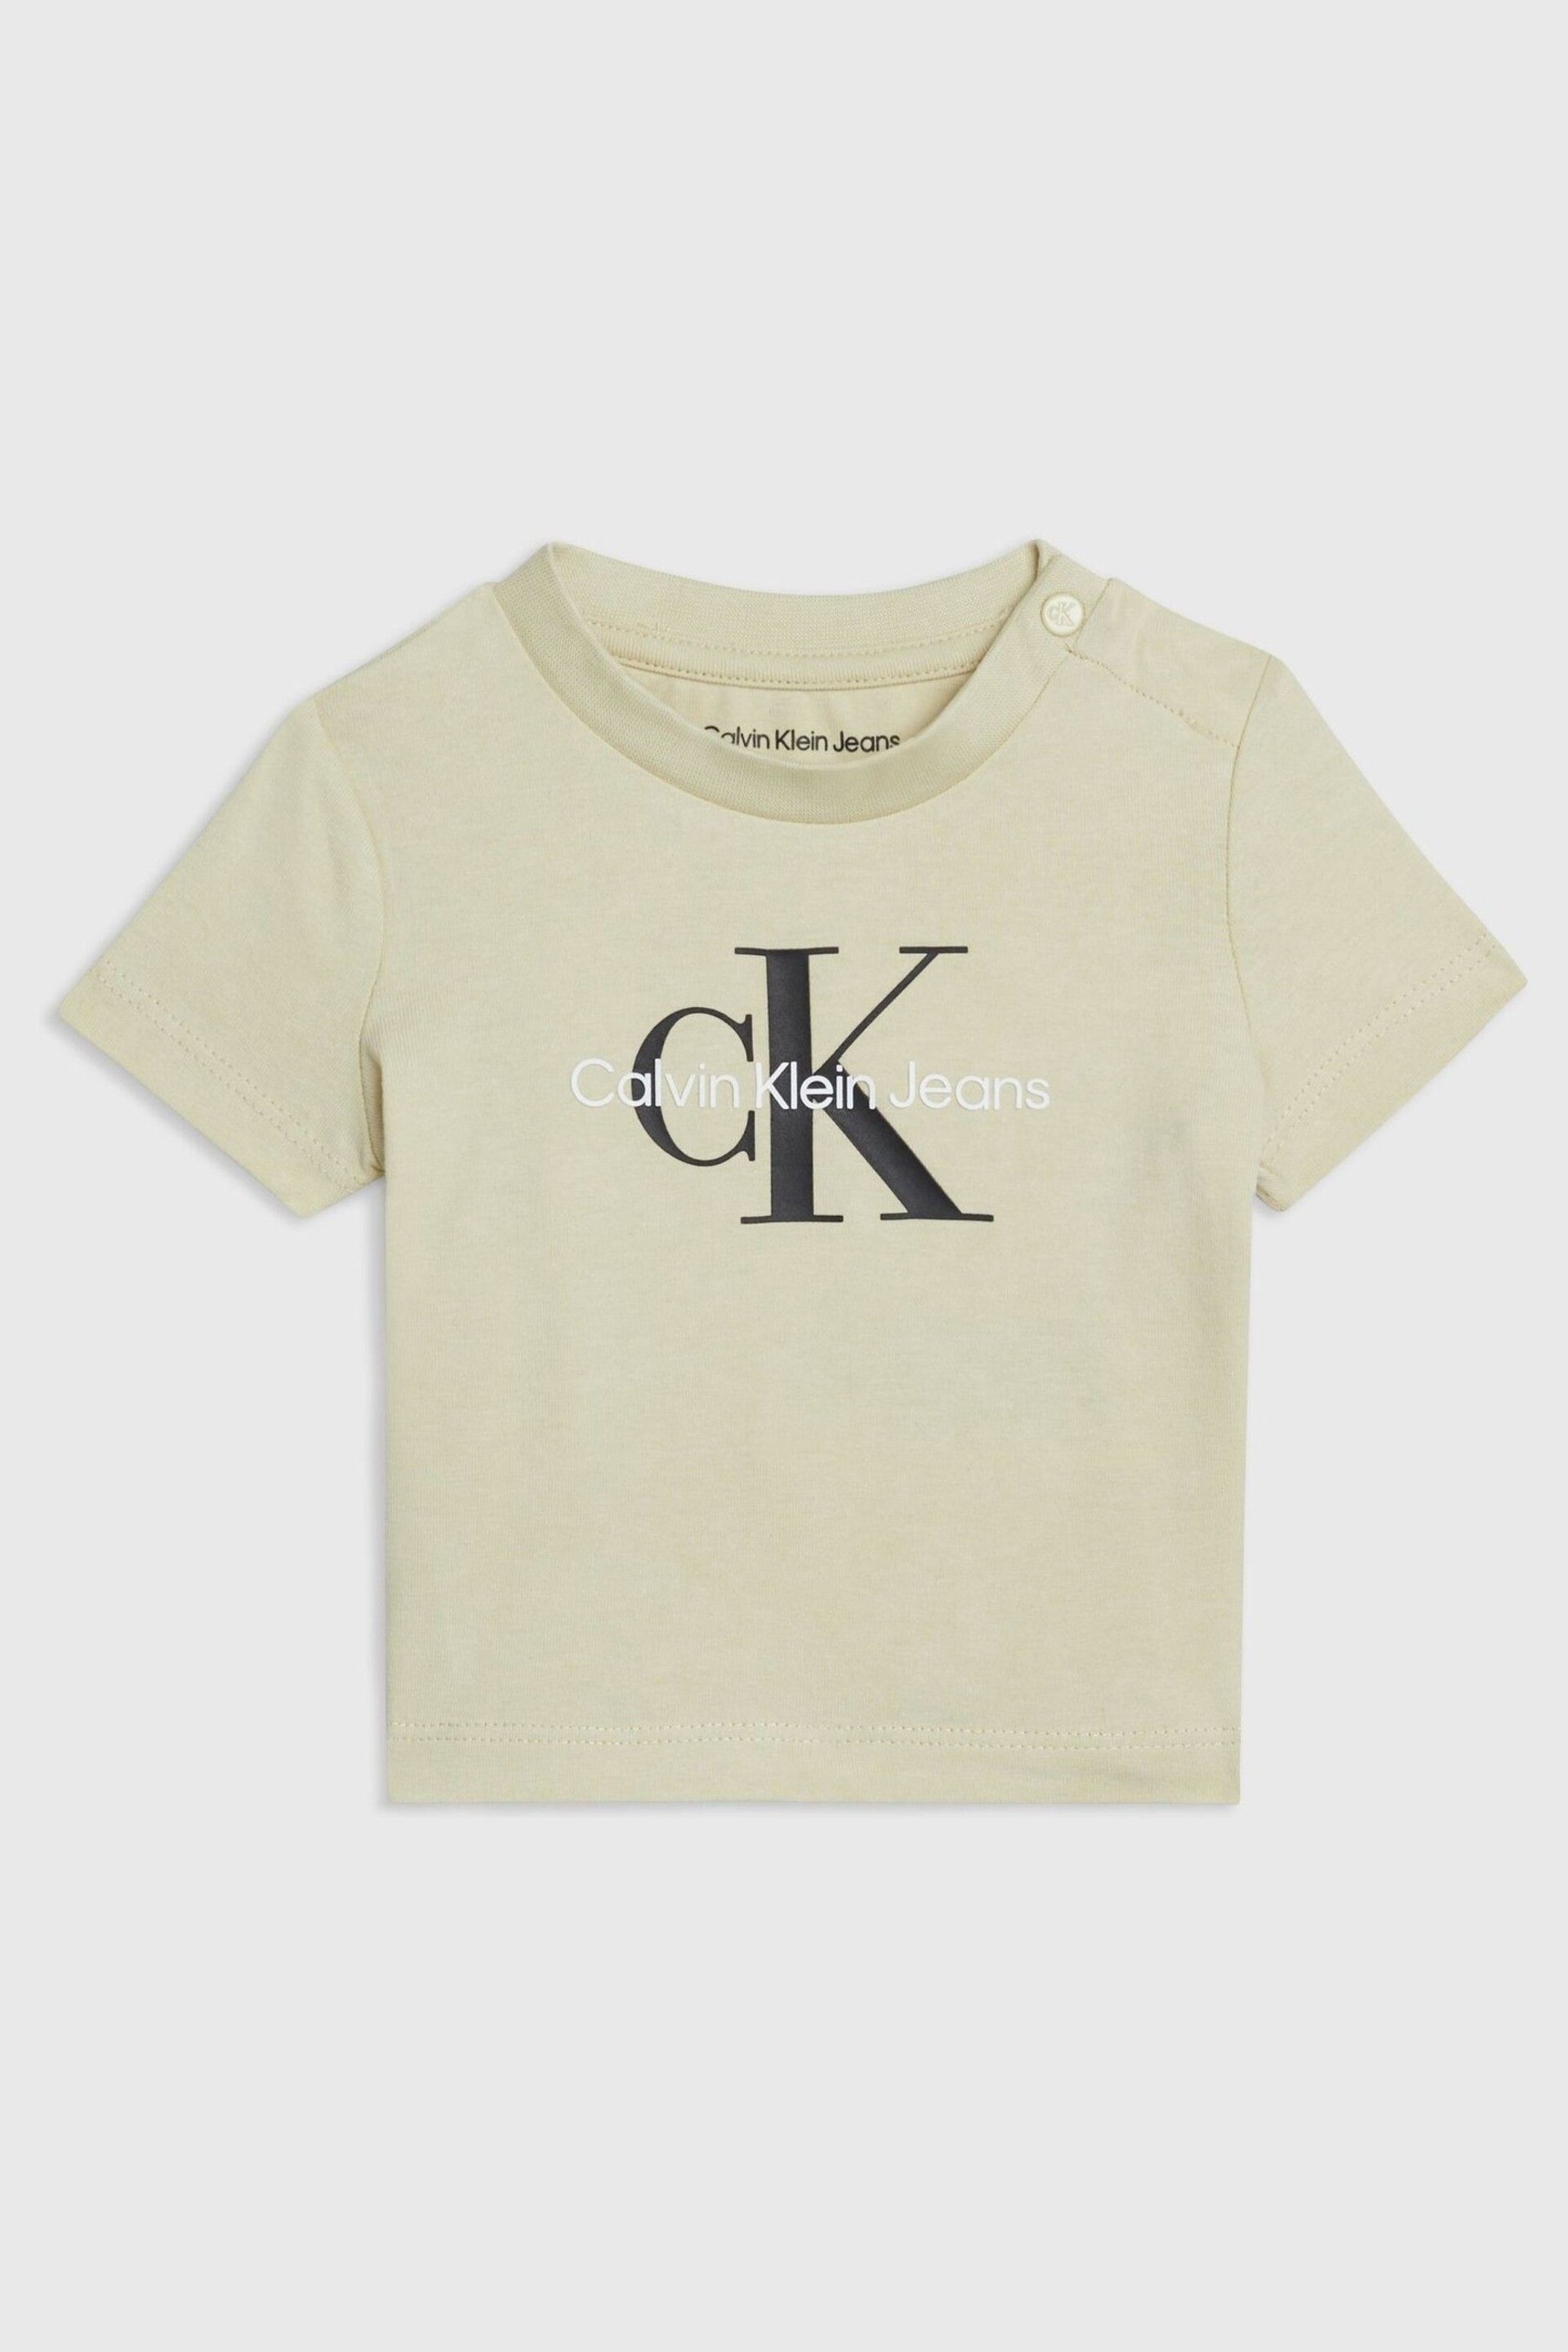 Calvin Klein Green Monogram T-Shirt - Image 1 of 2